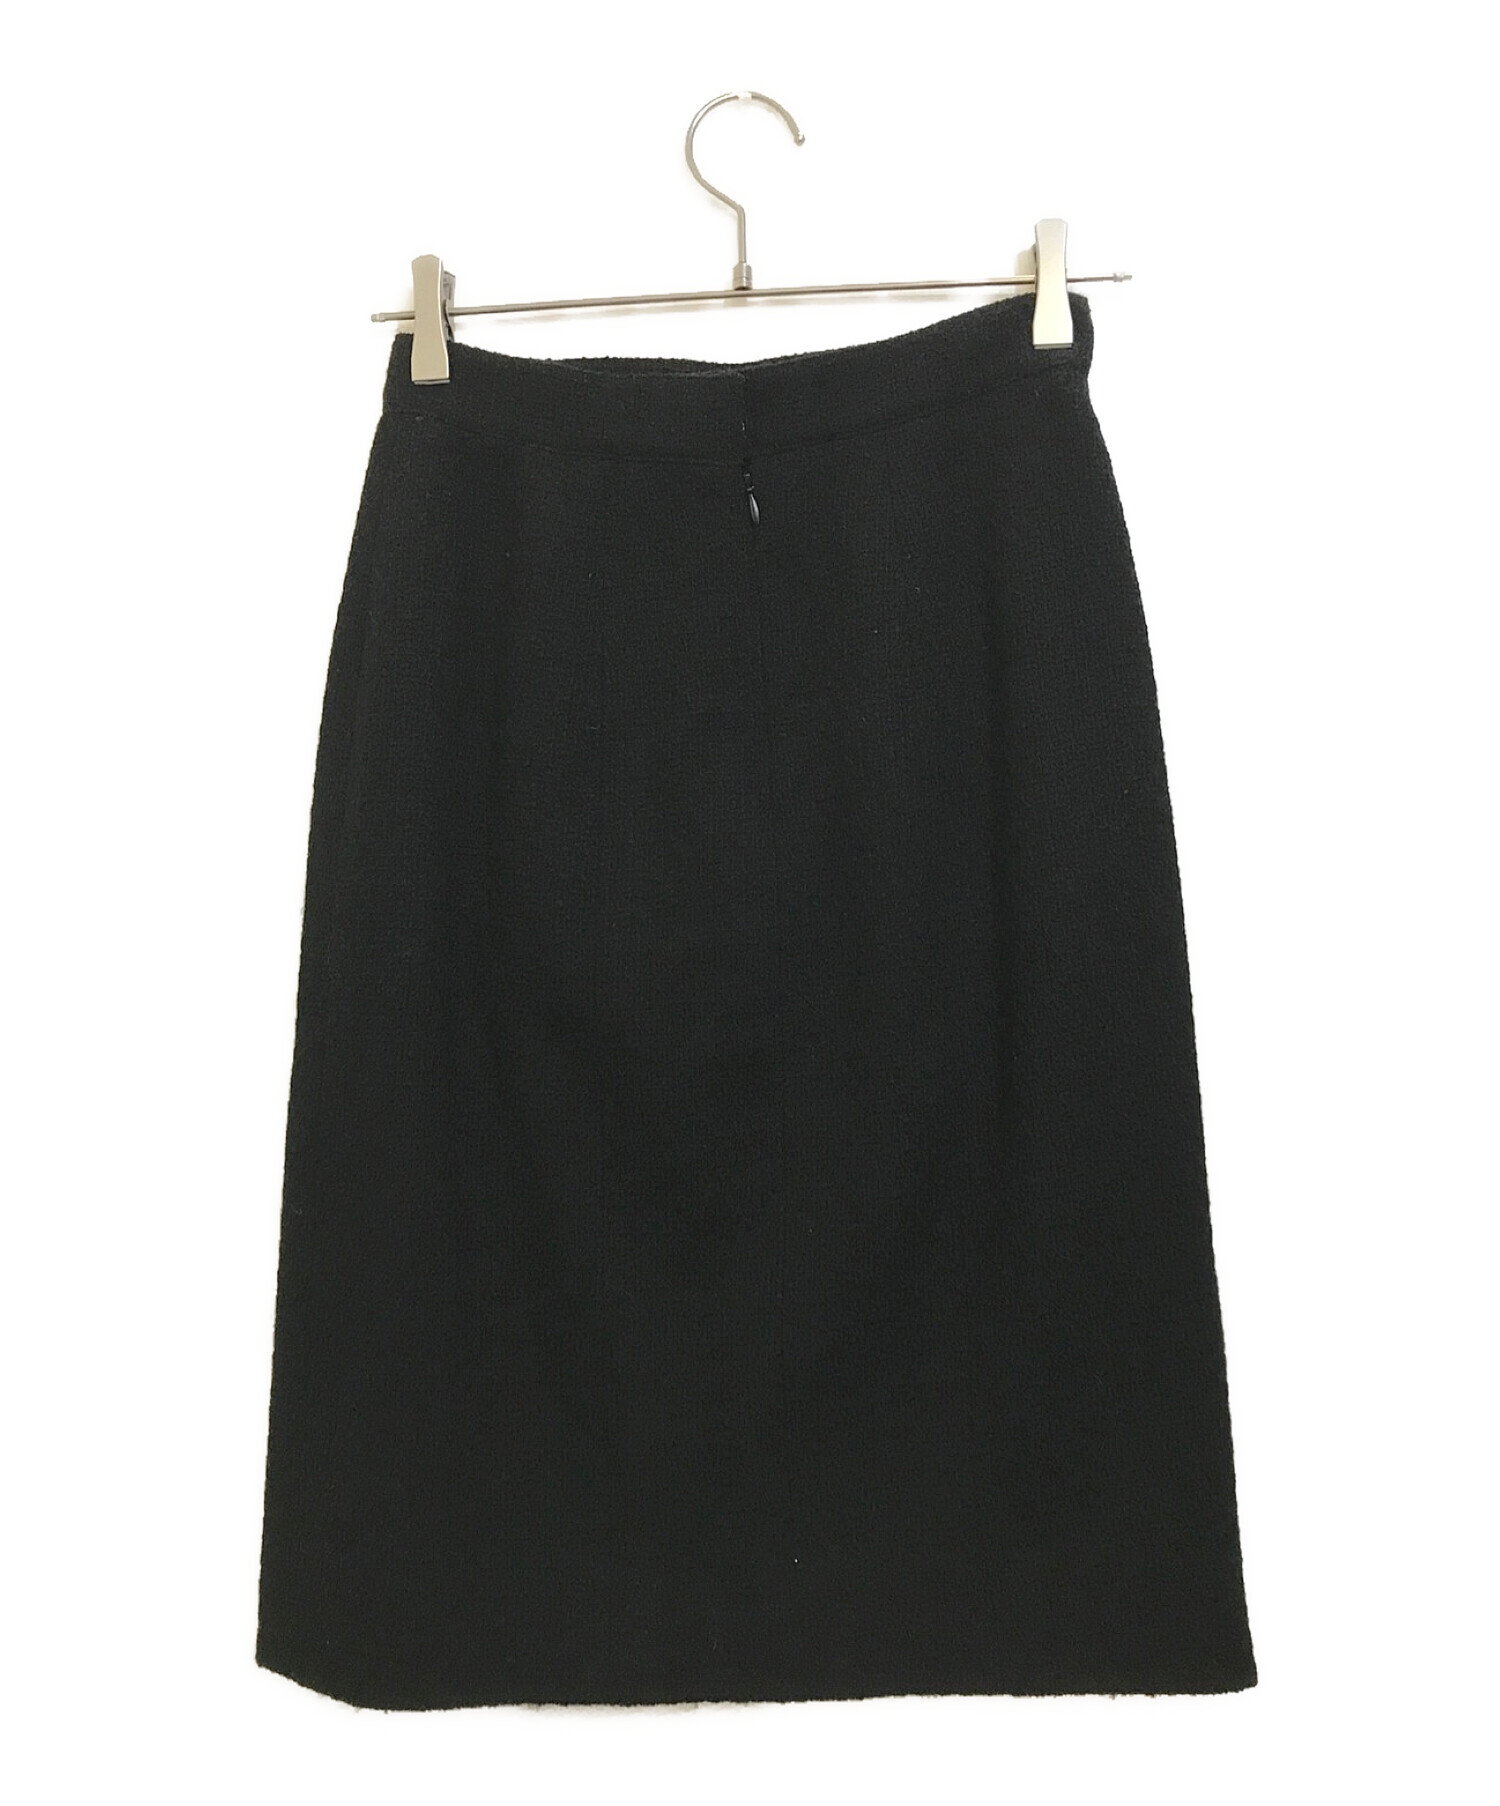 CHANEL (シャネル) ツイードスカート ブラック サイズ:42